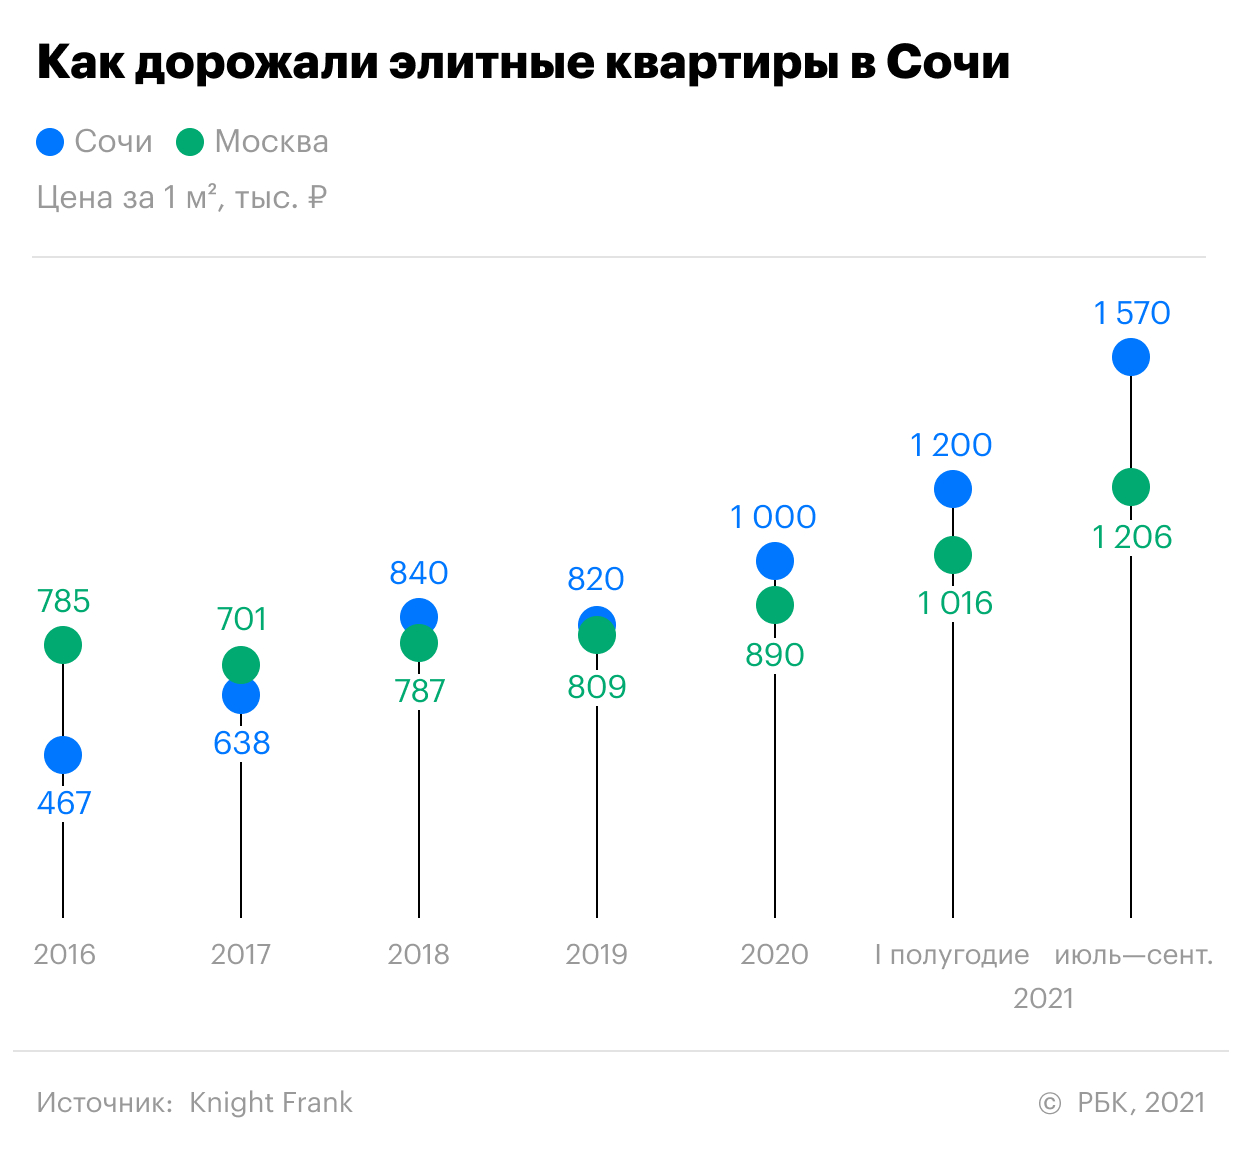 Элитные квартиры в Сочи оказались почти на треть дороже московских